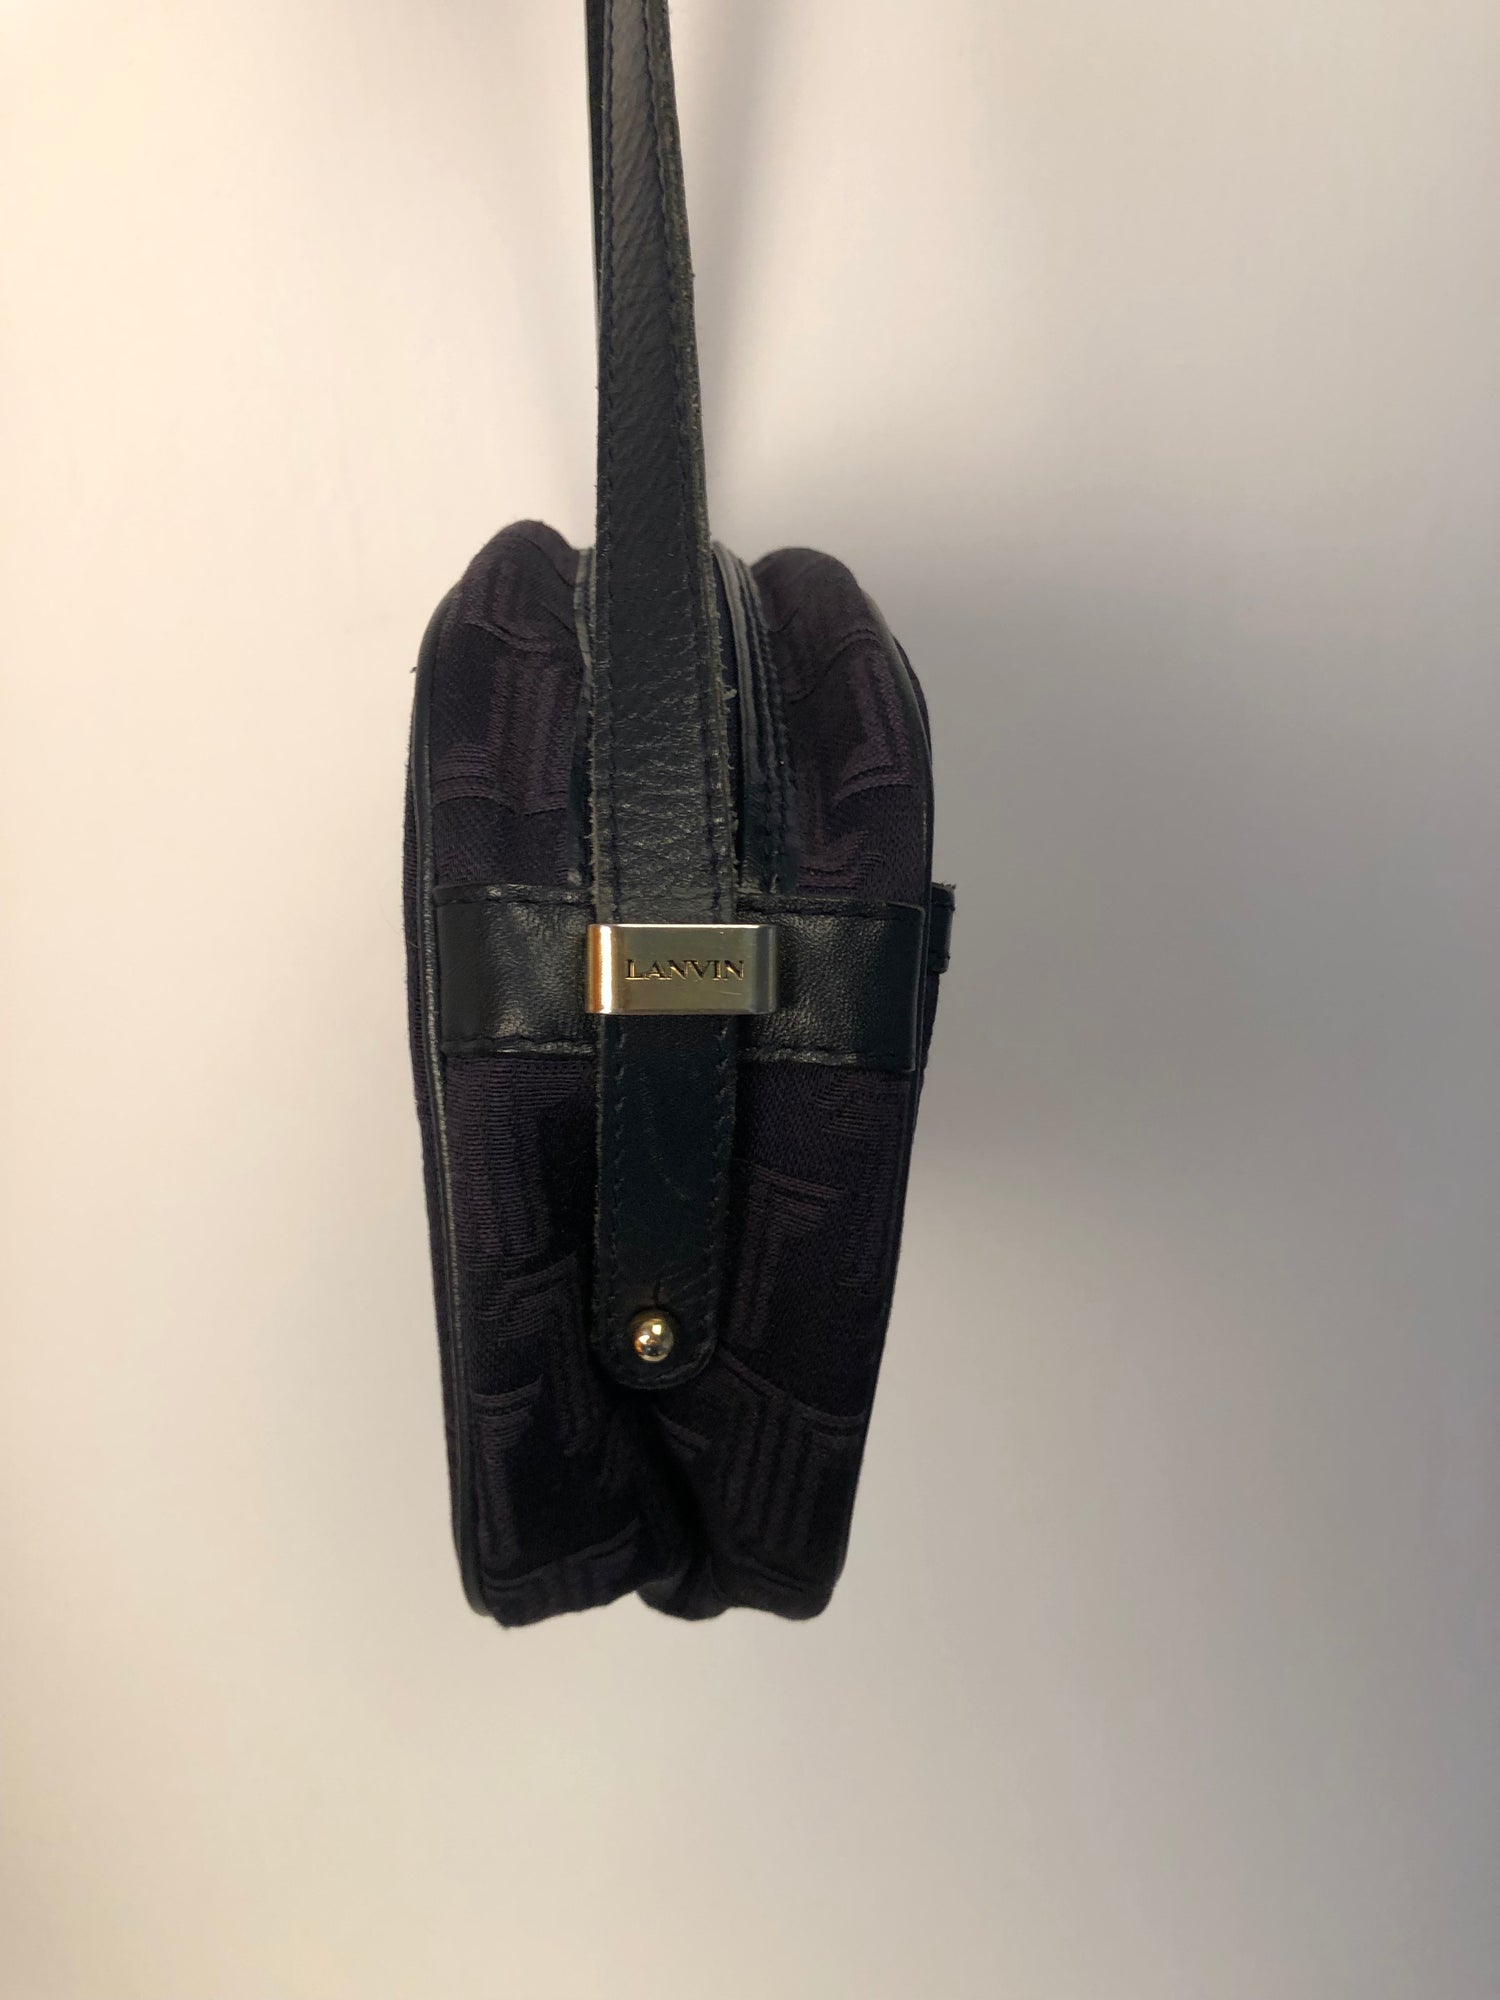 Lanvin Paris vintage monogrammed navy leather shoulder bag - 1980s